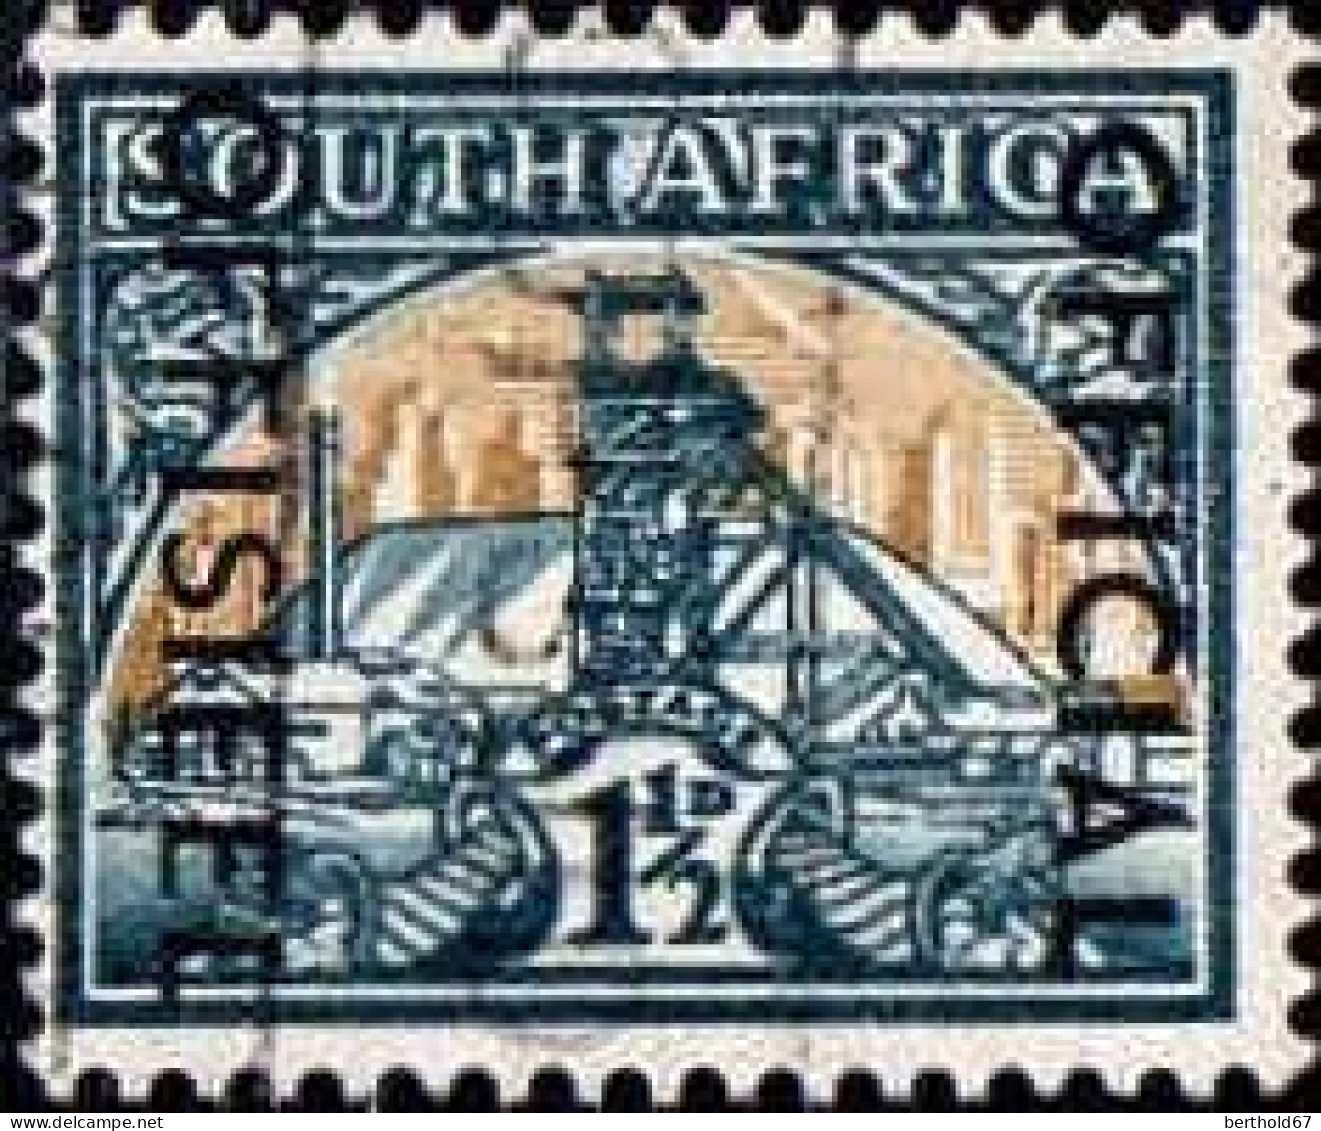 Afrique Du Sud Service Obl Yv: 56 Mi:70 Mine D'or (Obl.mécanique) - Dienstmarken